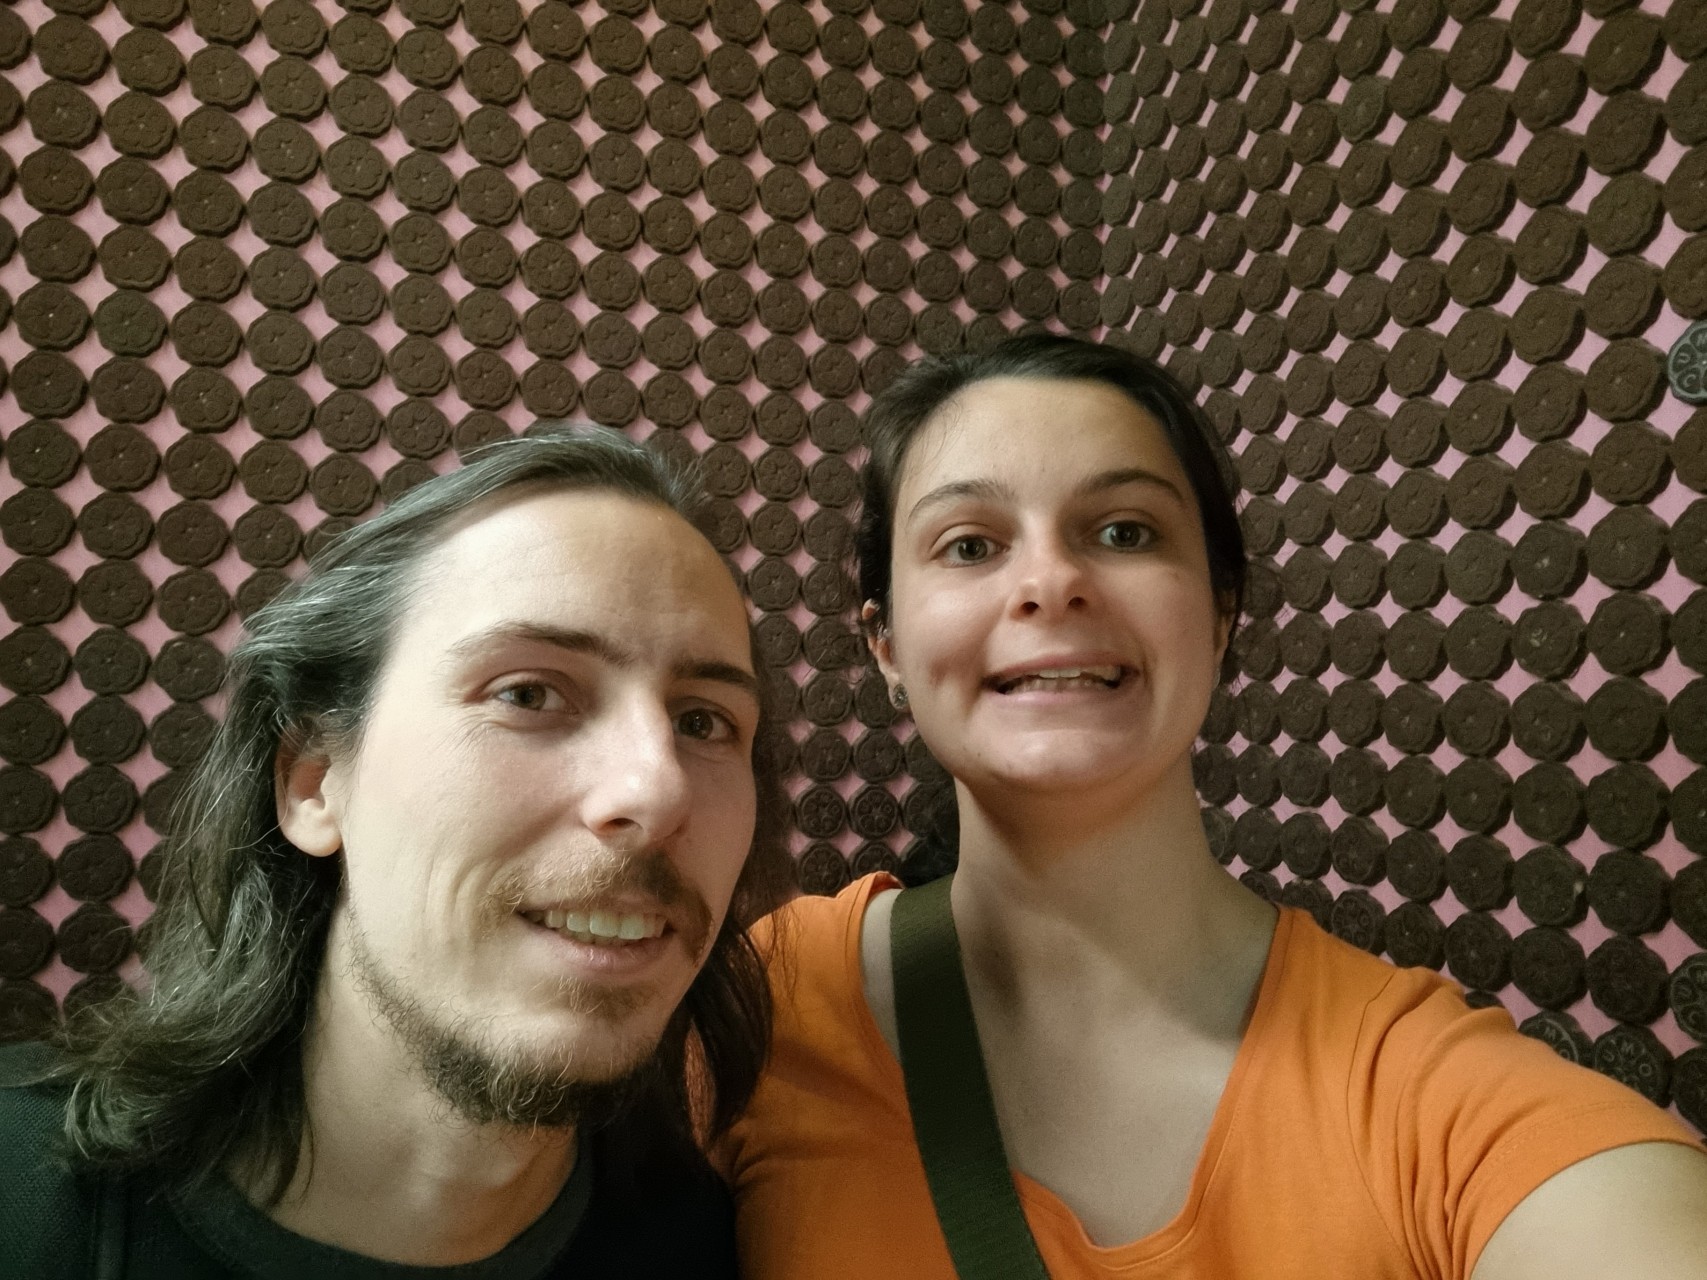 Florian et Fleur dans une pièce dont les murs sont tapissés de chocolats ronds